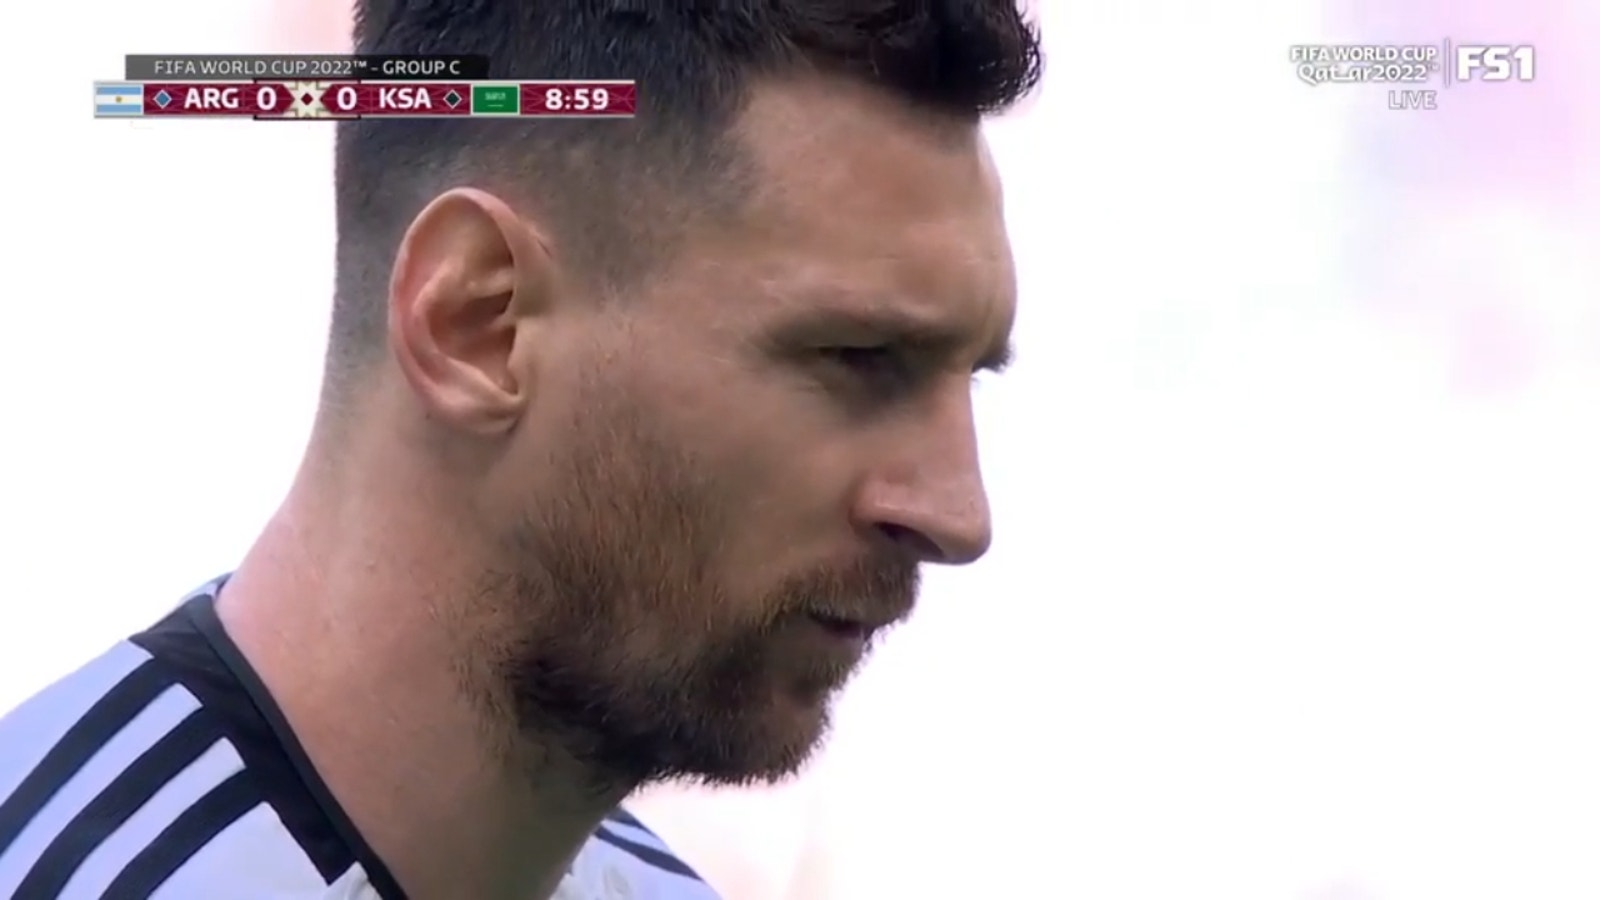 وسجل ليونيل ميسي ركلة جزاء في الدقيقة العاشرة ليمنح الأرجنتين التقدم 1-0 على السعودية.